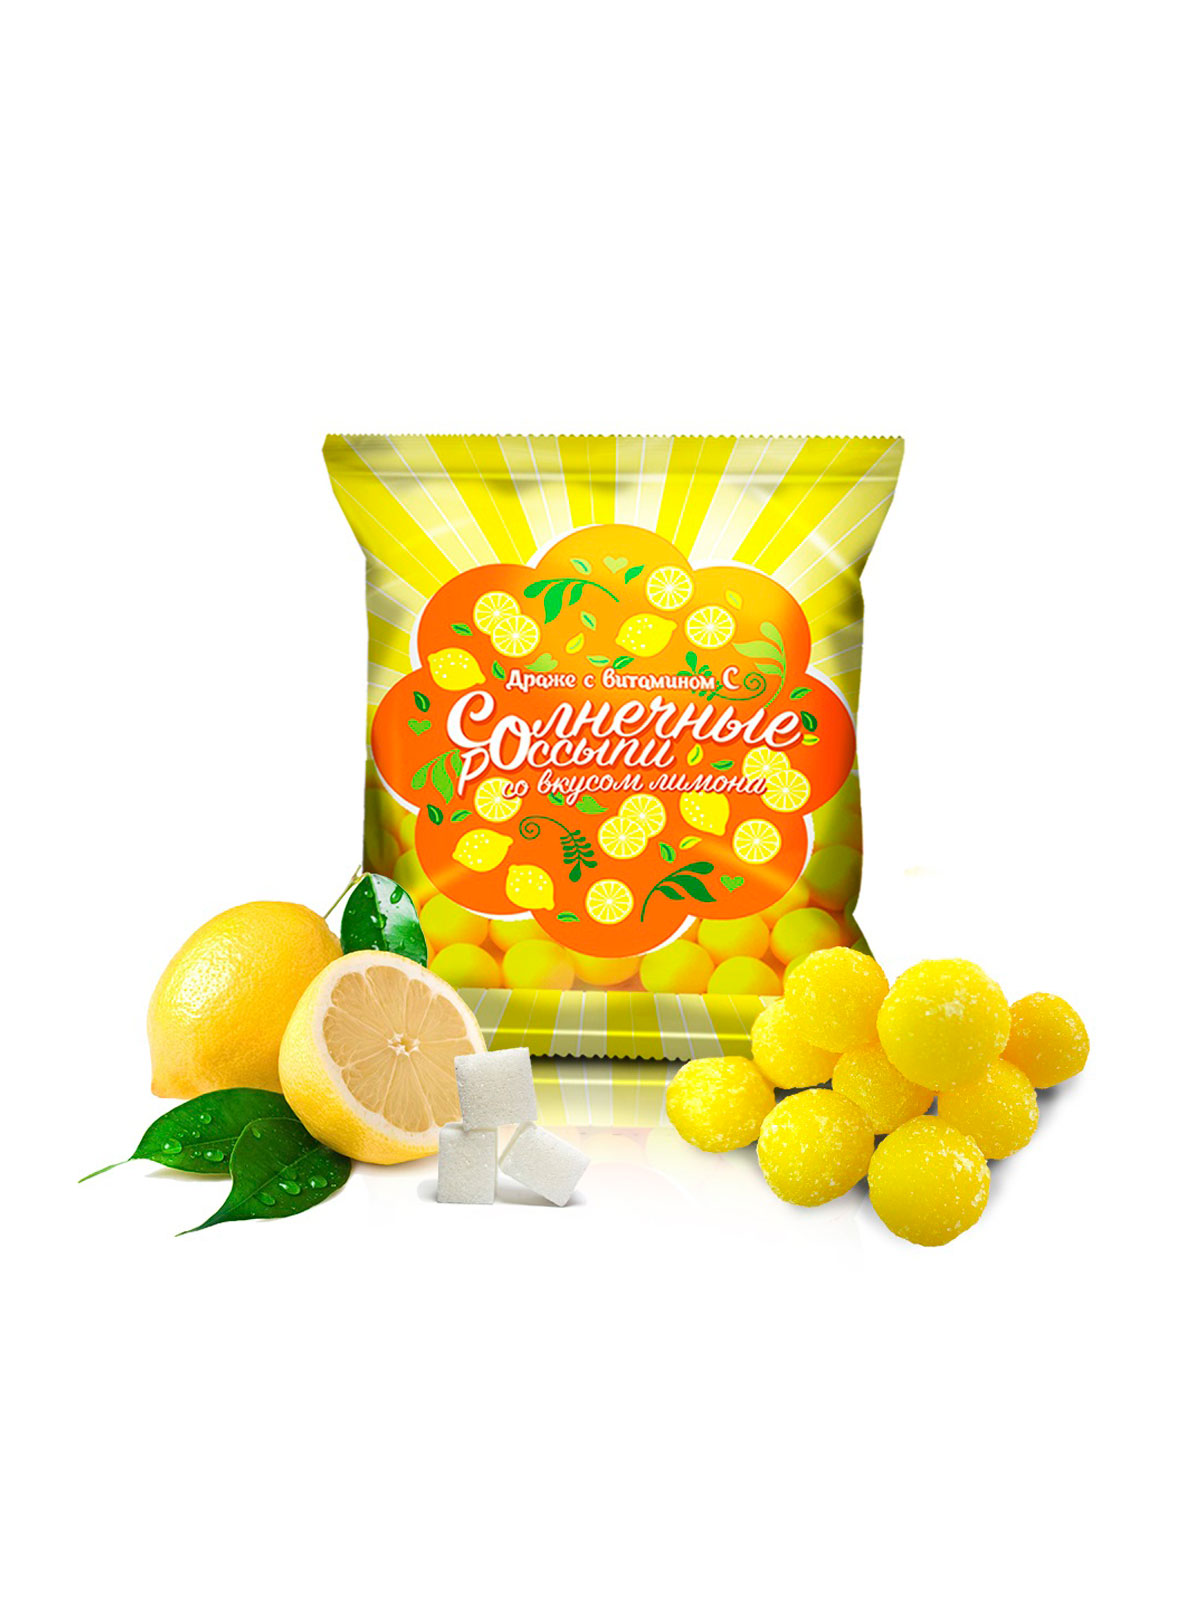 Драже сахарное с витамином С "Солнечные Россыпи" со вкусом лимона 200 г